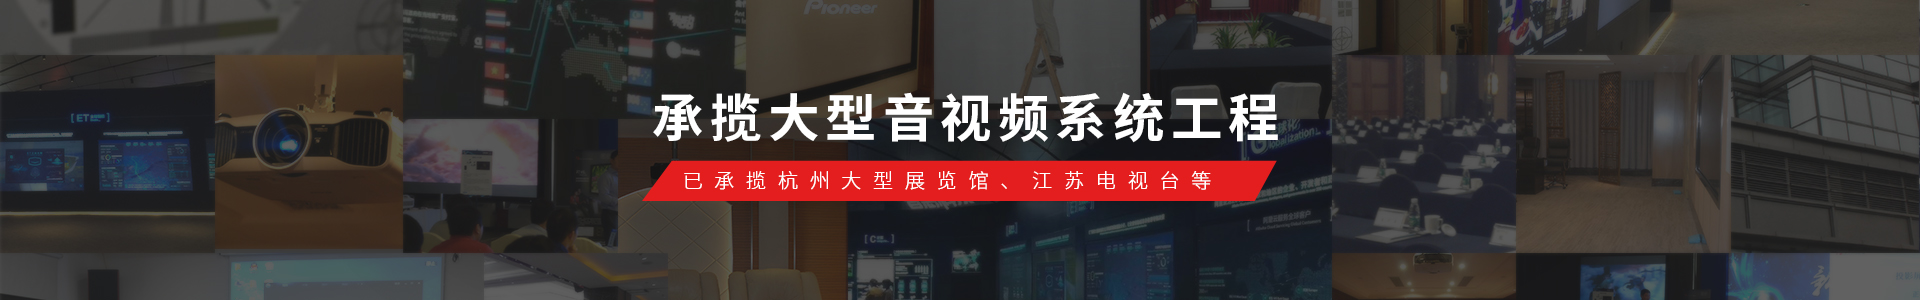 东宇音响已承揽Alibaba展览馆、江苏电视台等大型音视频系统工程